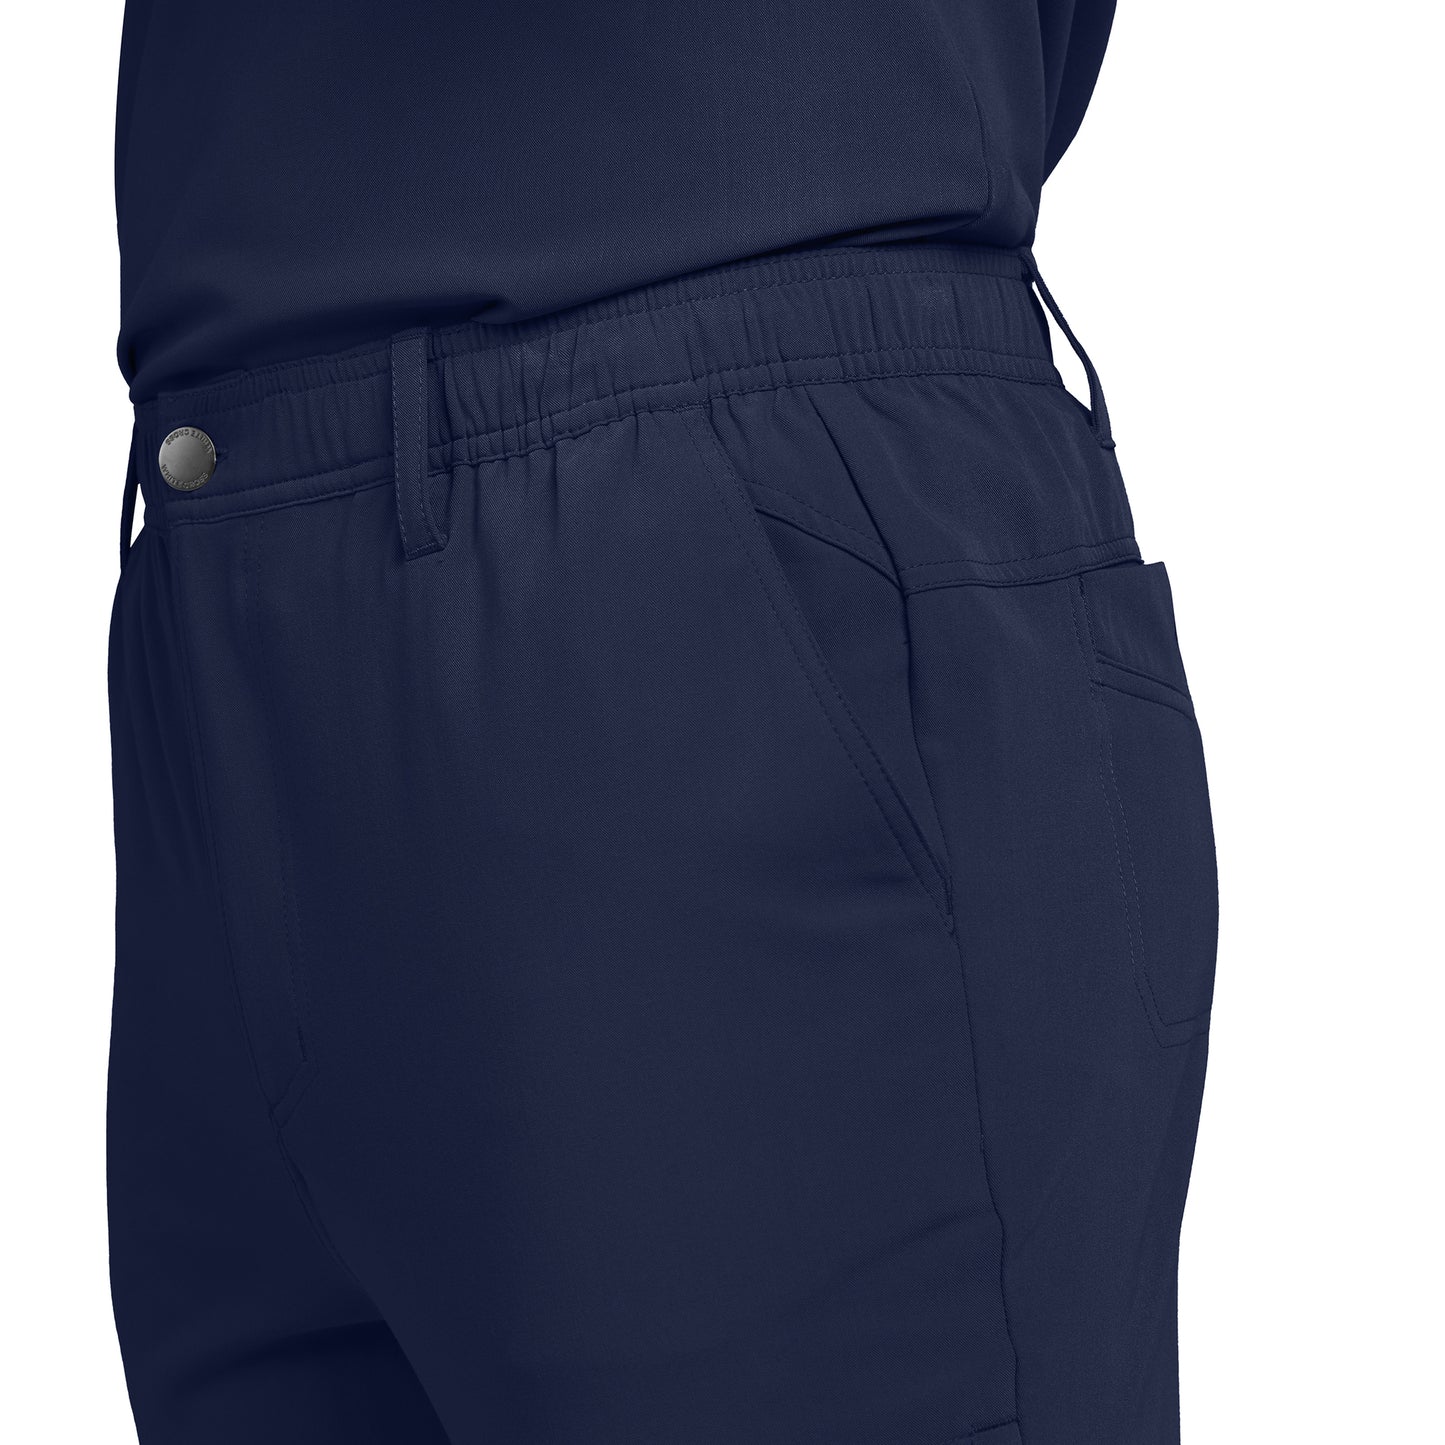 Vue latérale pantalon cargo 7 poches à jambe droite pour homme CRFT White Cross #WB418 couleur marine